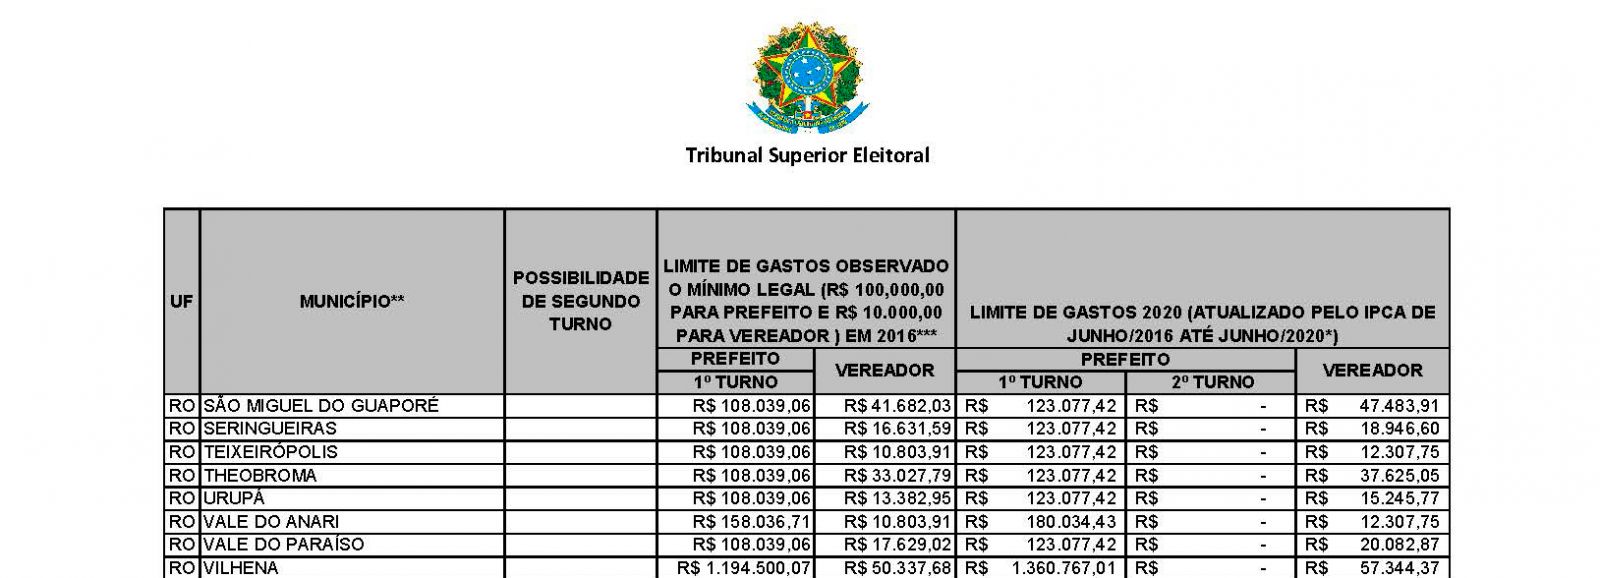 TSE divulga limite de gastos para campanha eleitoral - News Rondônia